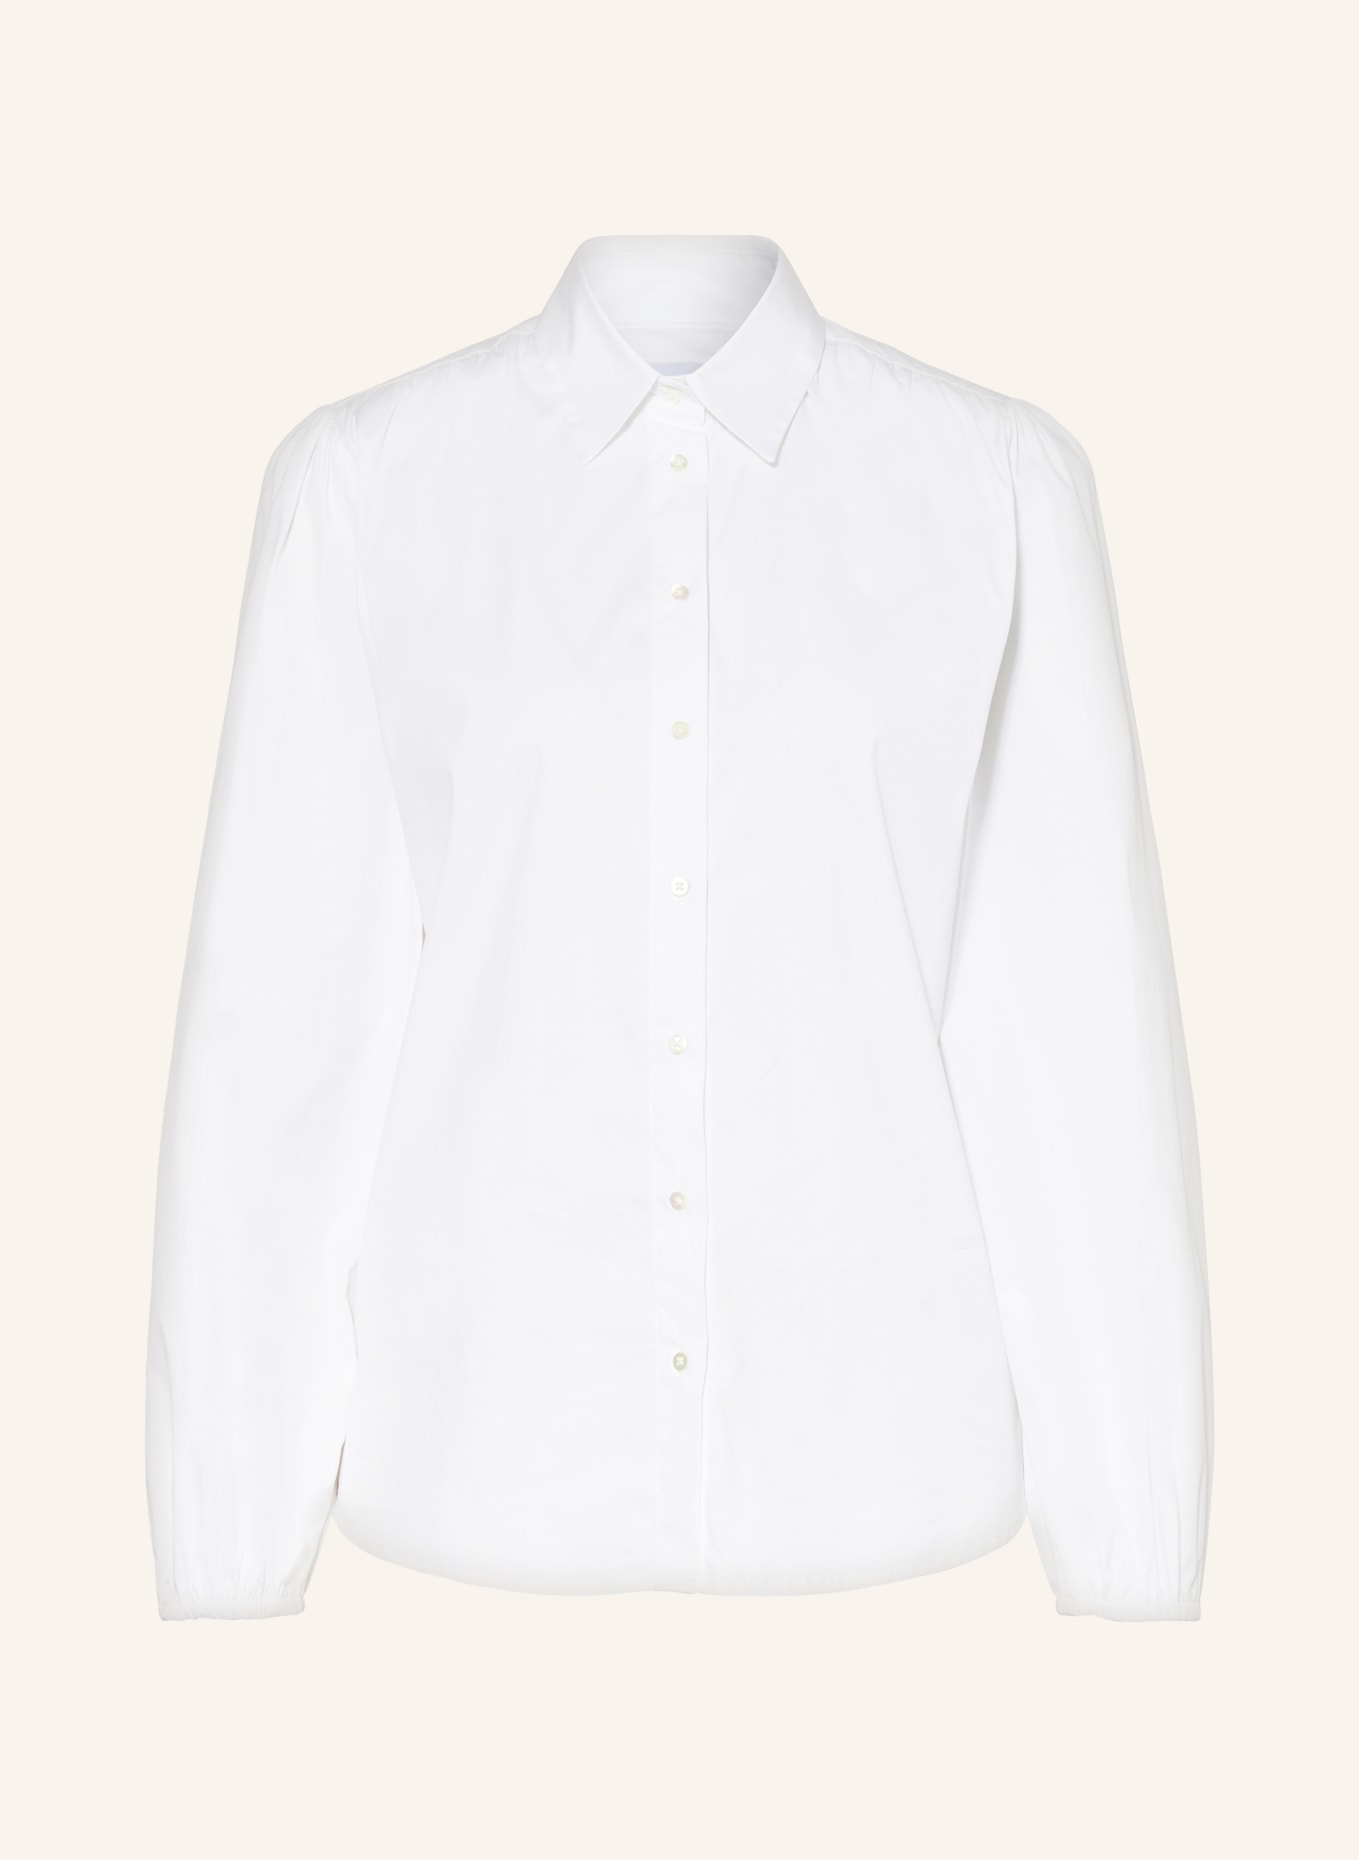 TONNO & PANNA Shirt blouse, Color: WHITE (Image 1)